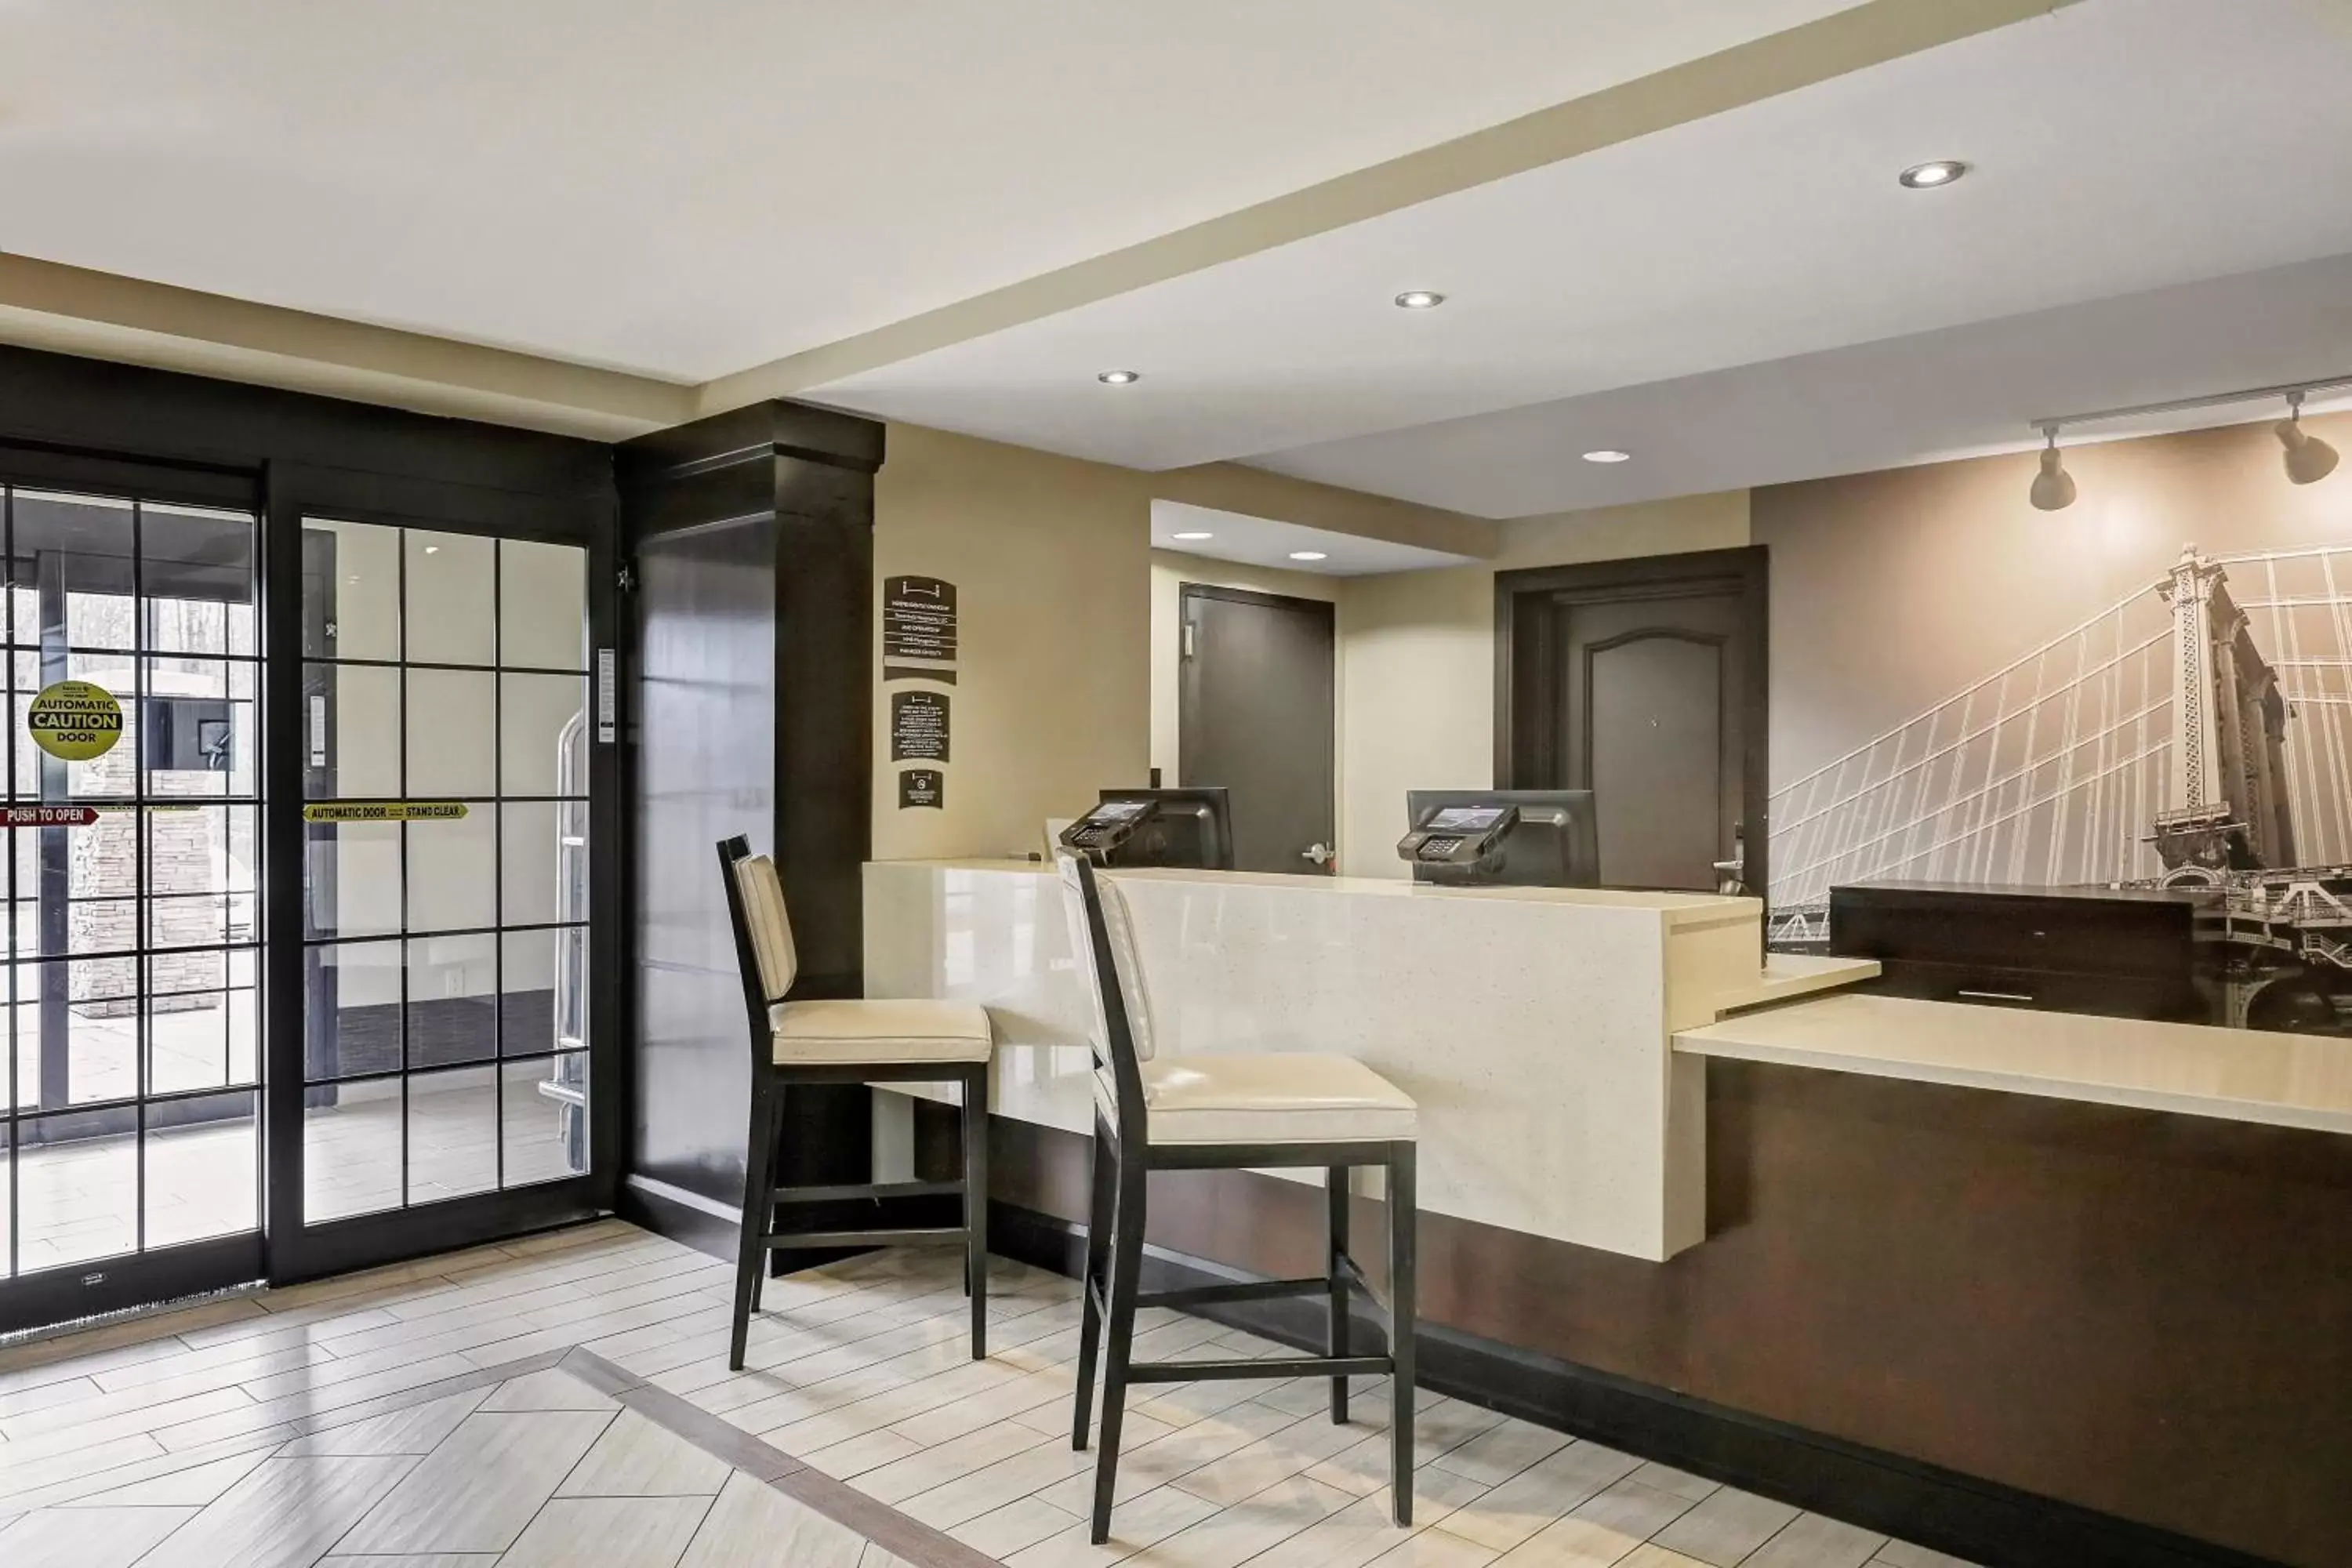 Property building, Kitchen/Kitchenette in Staybridge Suites Washington D.C. - Greenbelt, an IHG Hotel